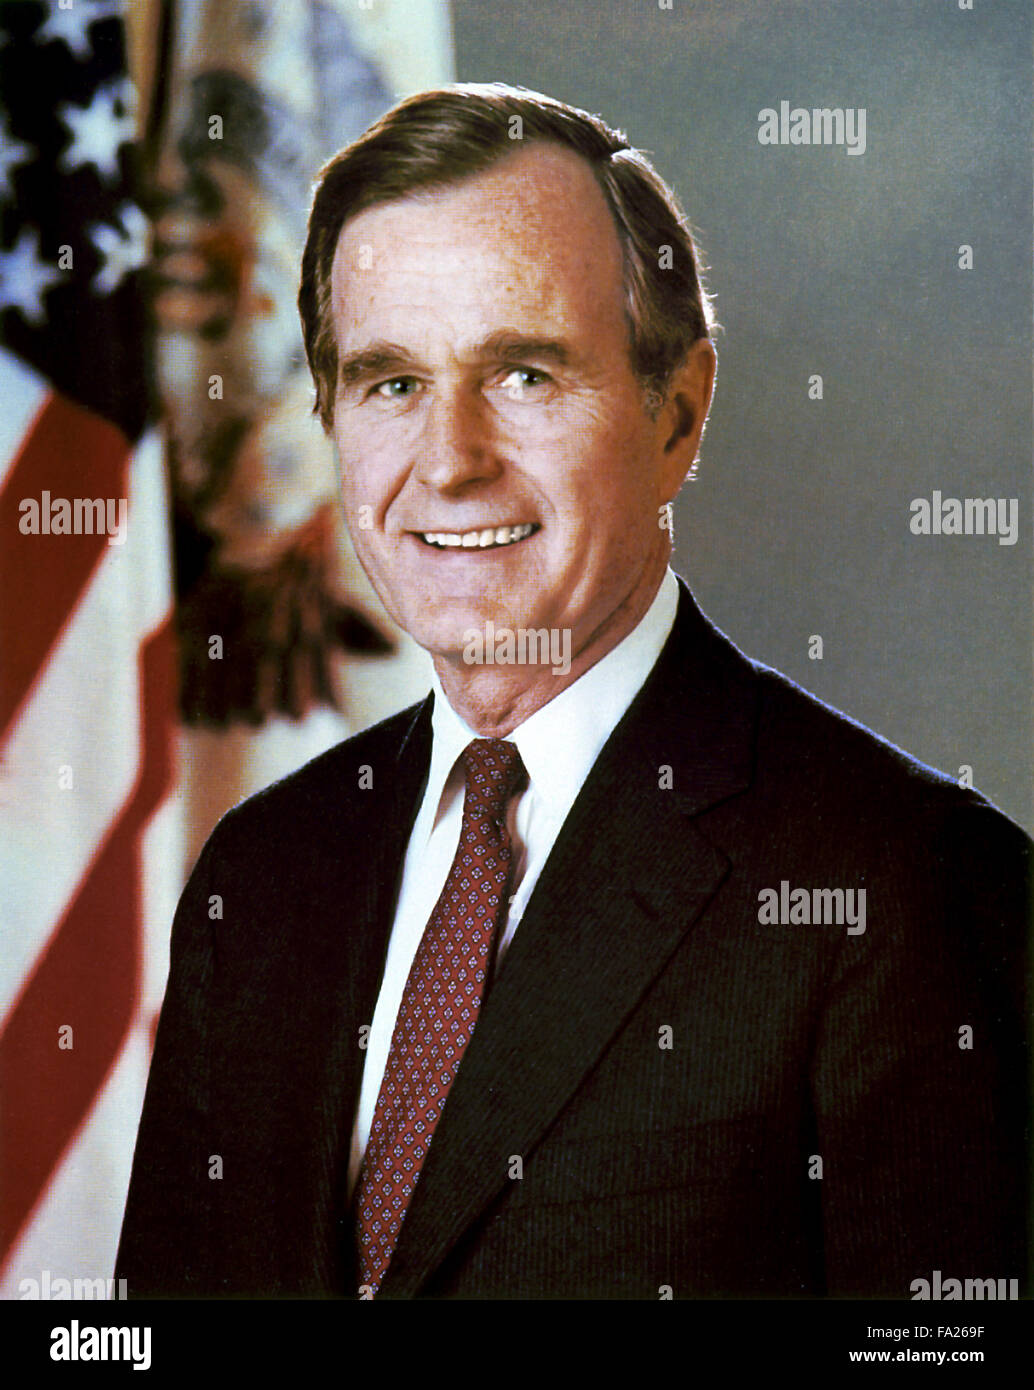 George H. W. Bush, americano que sirve como el 41º Presidente de los Estados Unidos desde 1989 hasta 1993, y la 43ª Vice Presidente de los Estados Unidos (1981-1989). Foto de stock